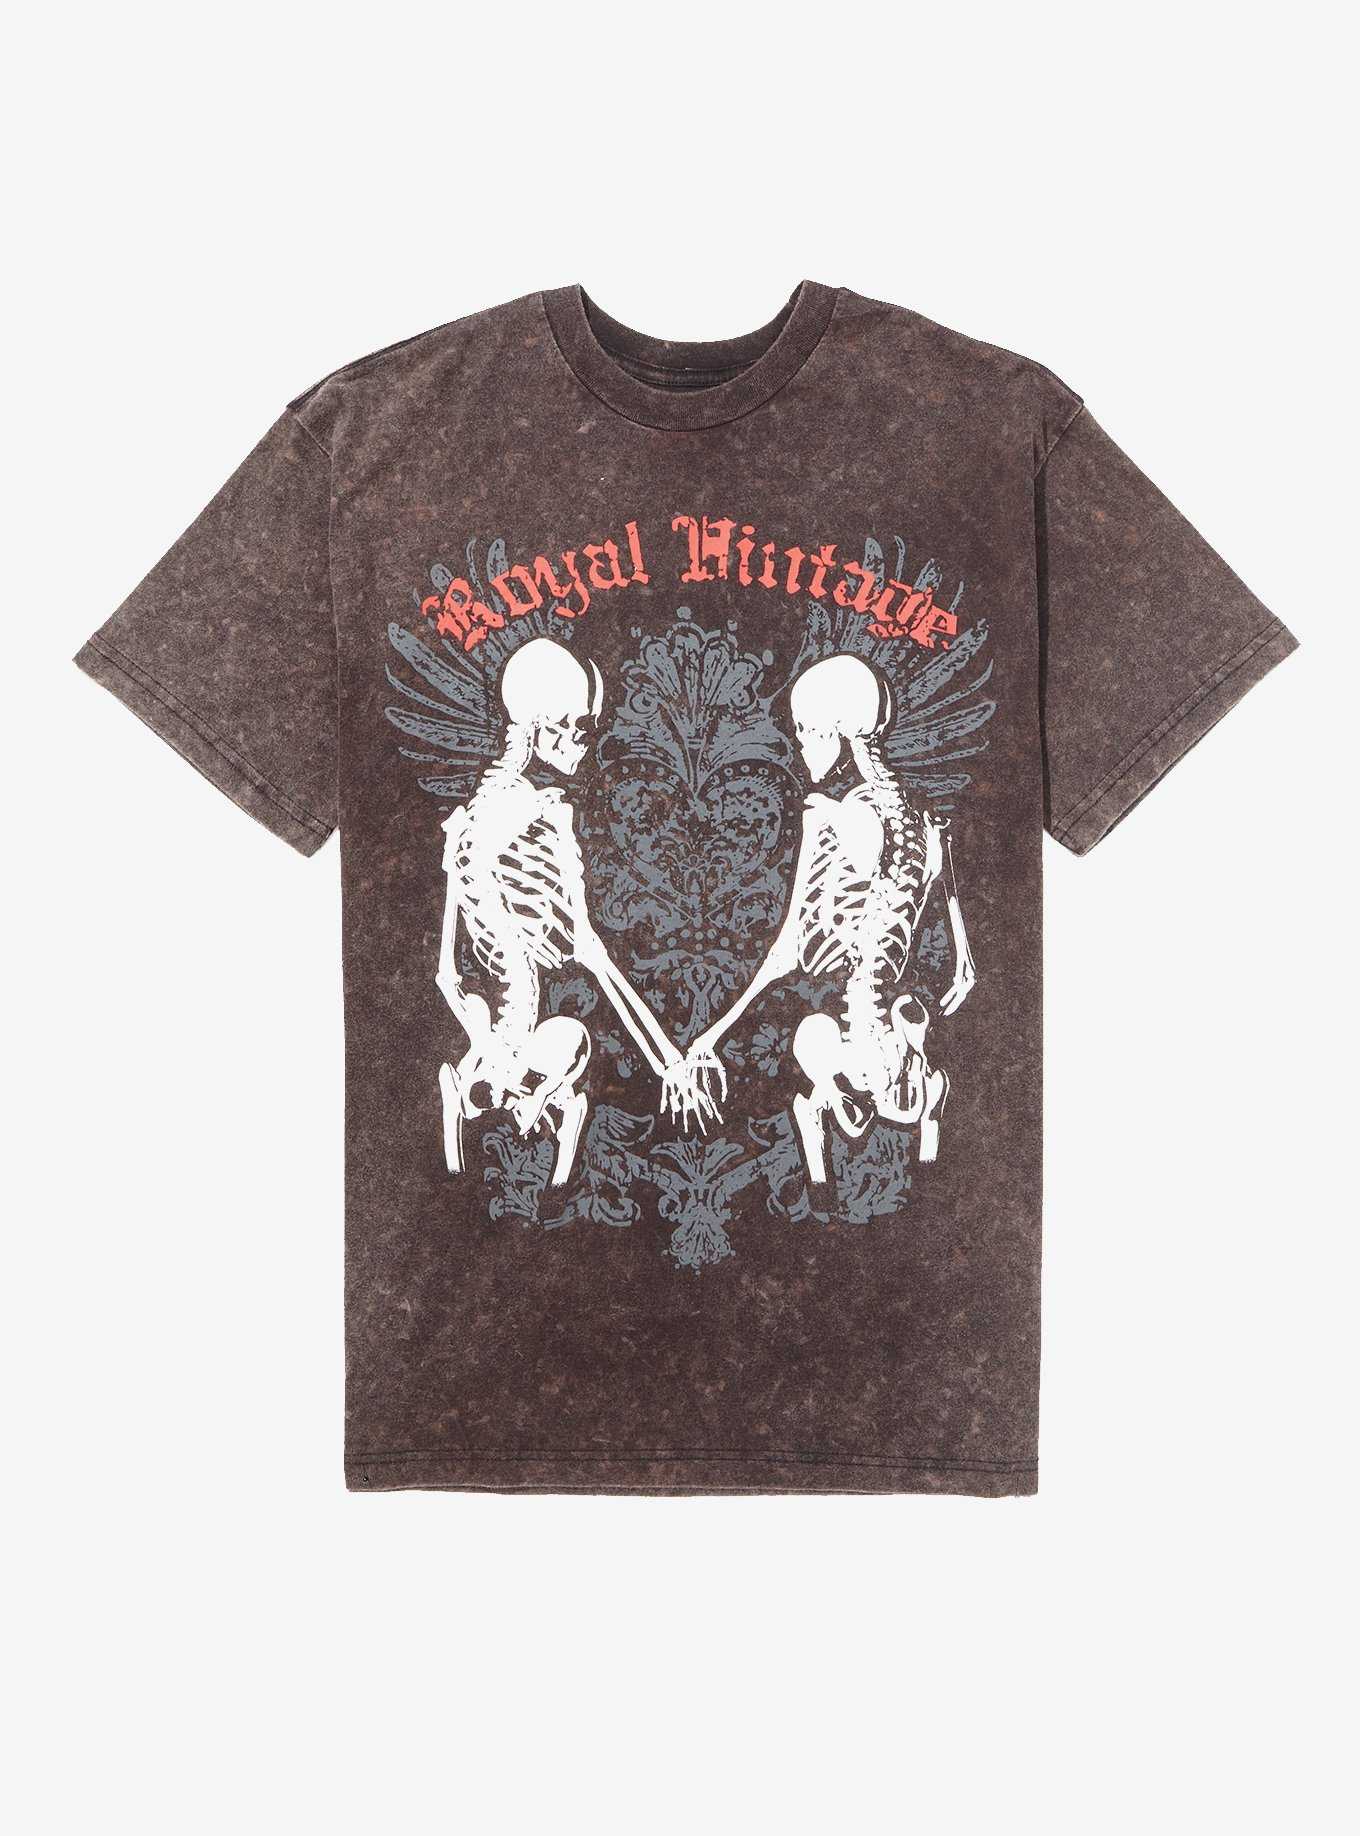 Skeleton Holding Hands Washed Boyfriend Fit Girls T-Shirt, , hi-res